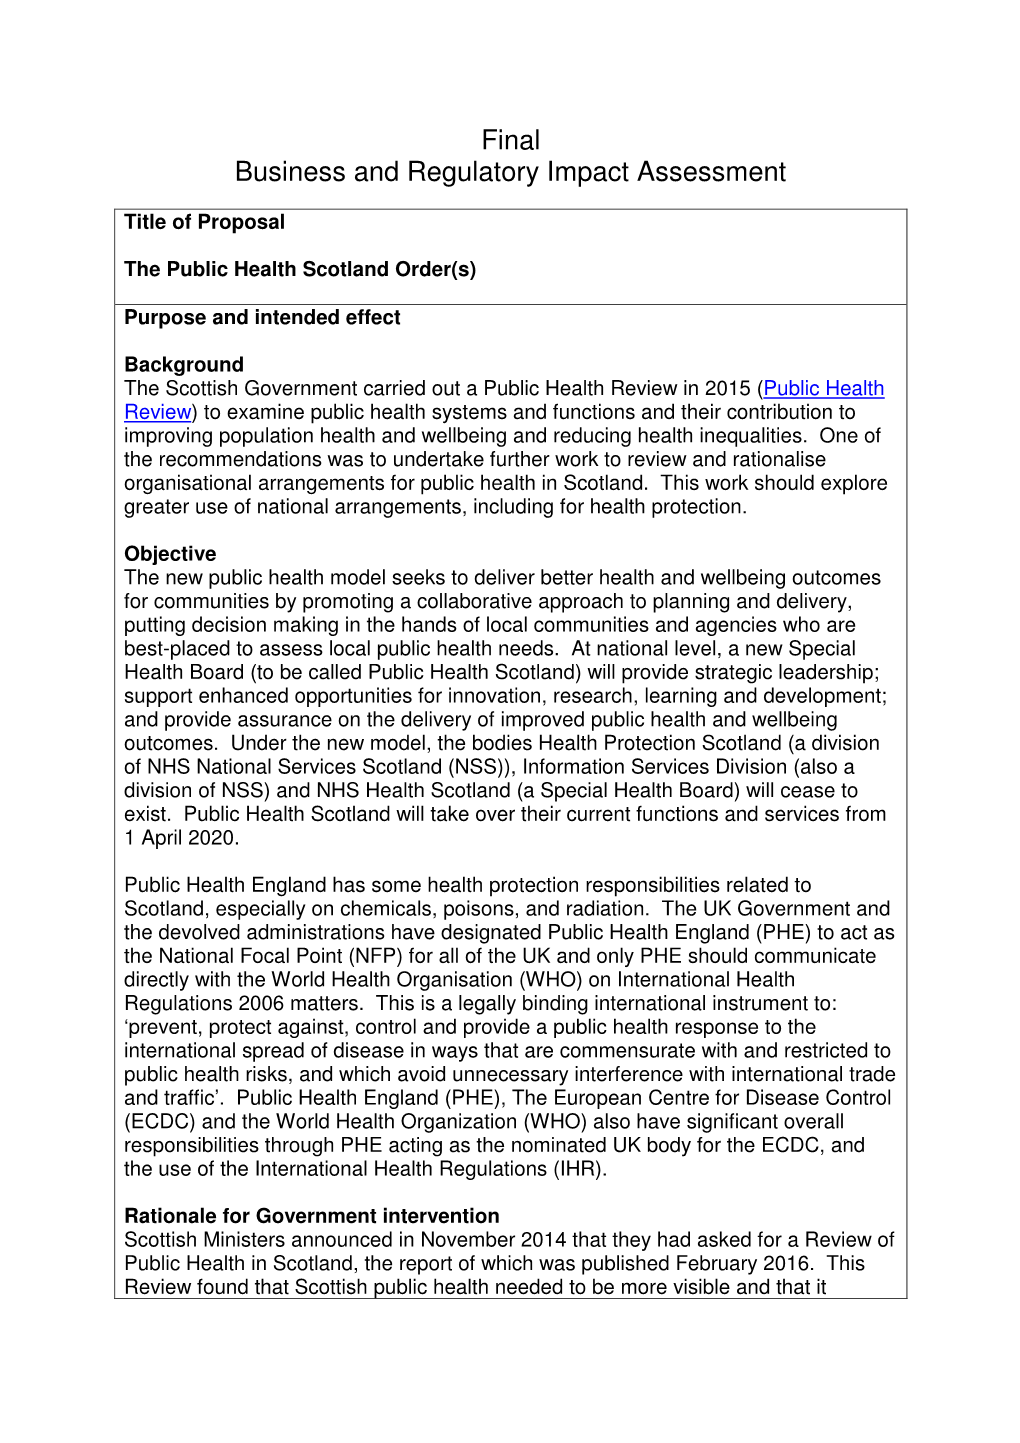 The Public Health Scotland Order 2019